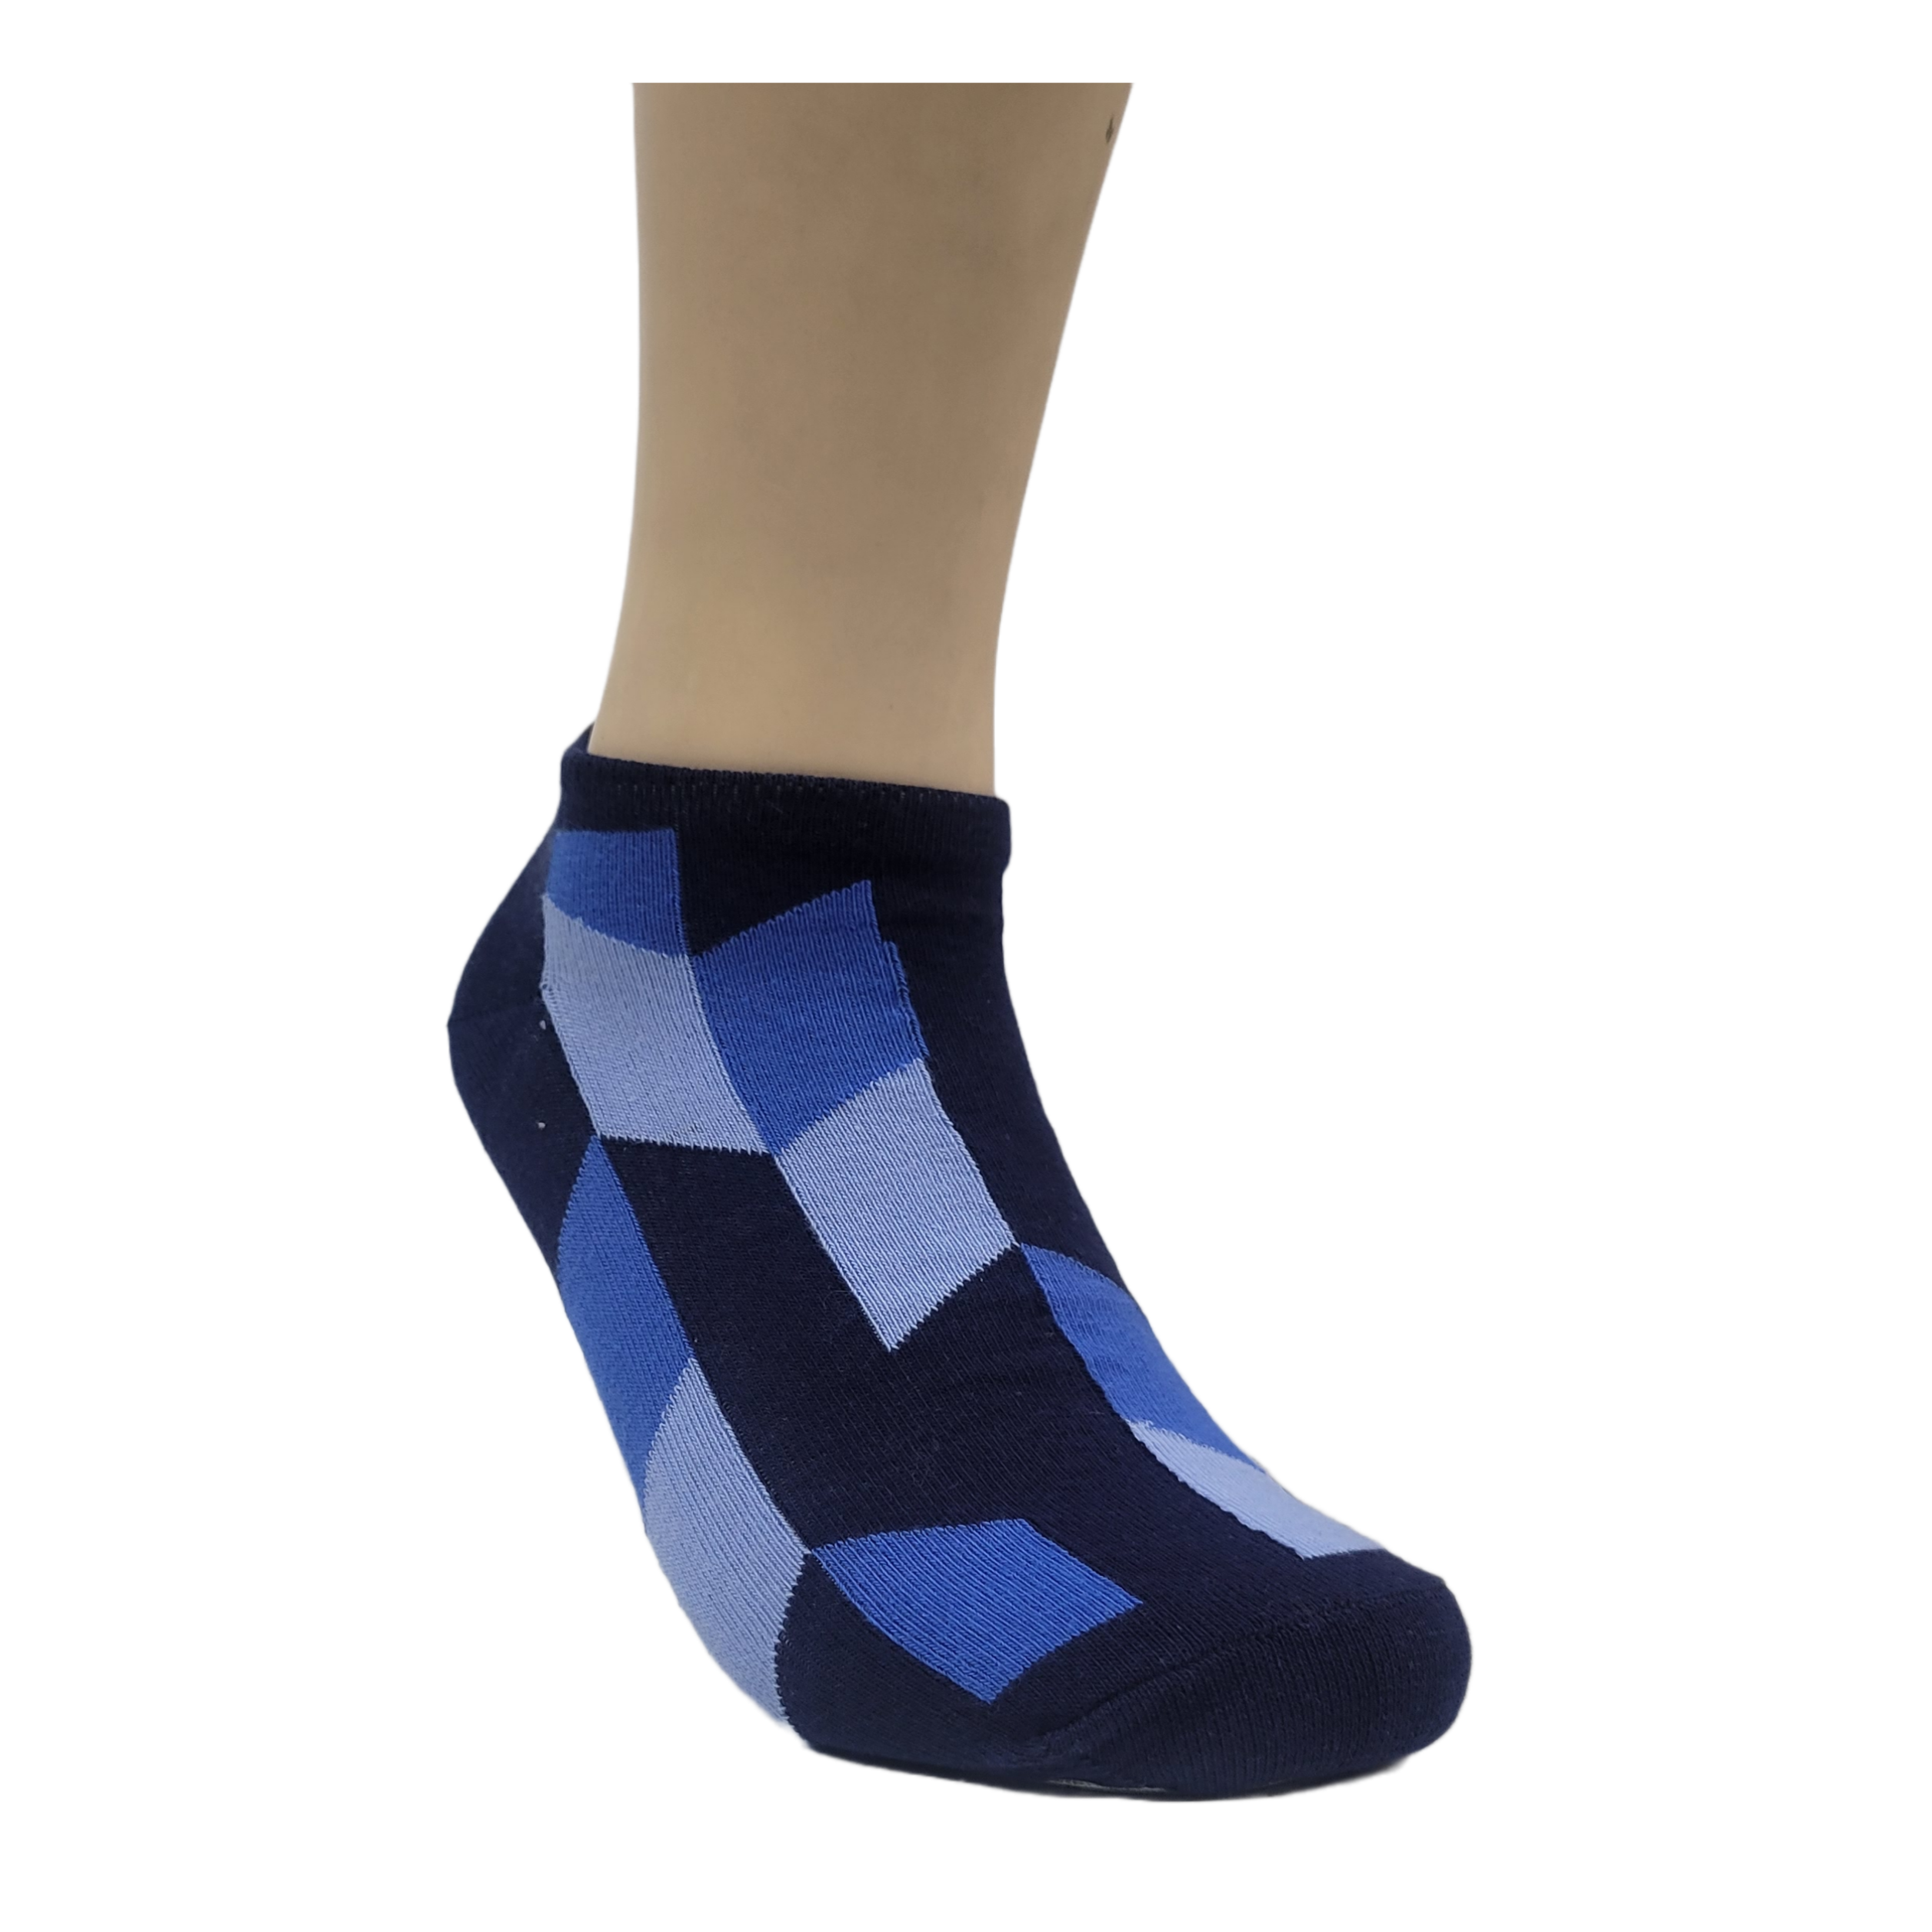 Blue Patterned Ankle Socks (Adult Medium)